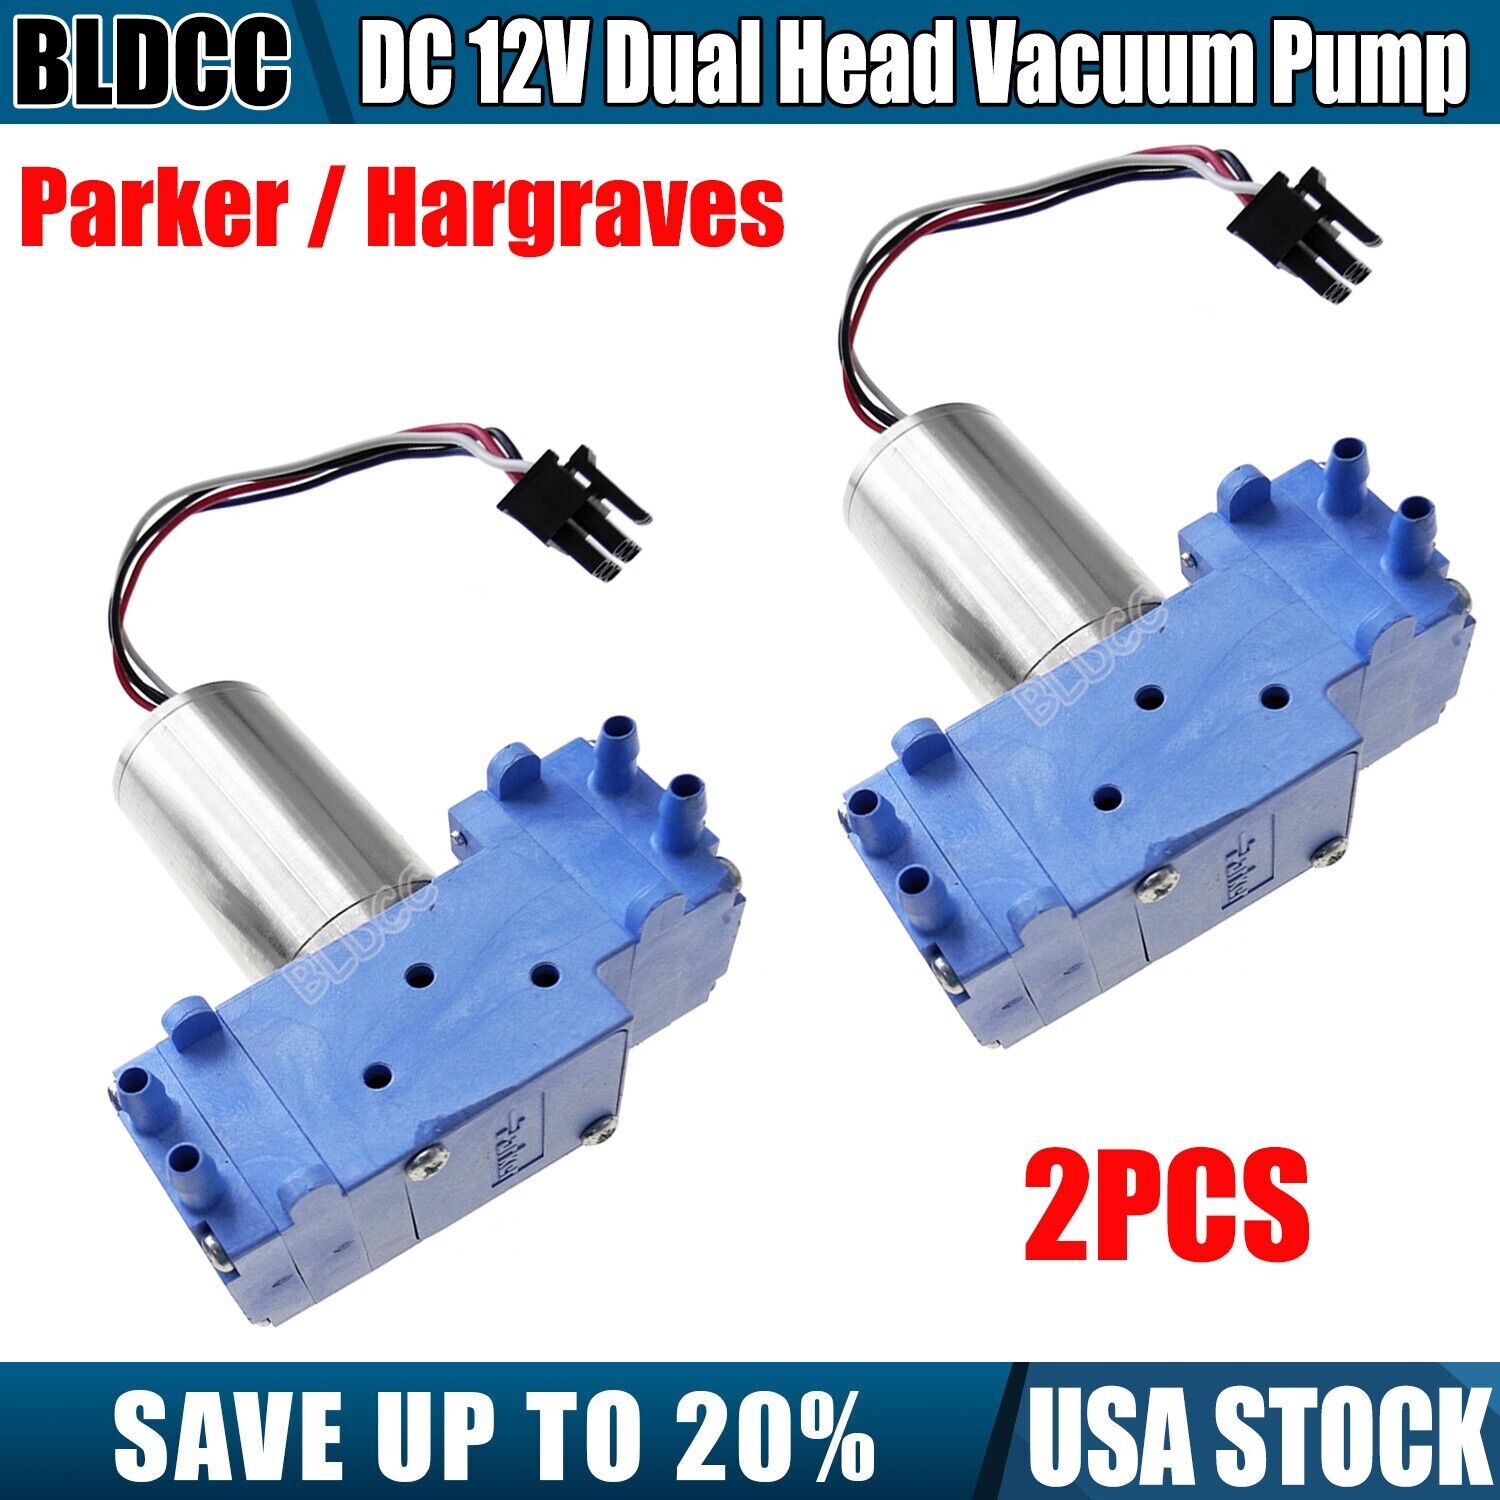 2PCS High-Efficiency Parker / Hargraves DC 12V Double Head Diaphragm Vacuum Pump